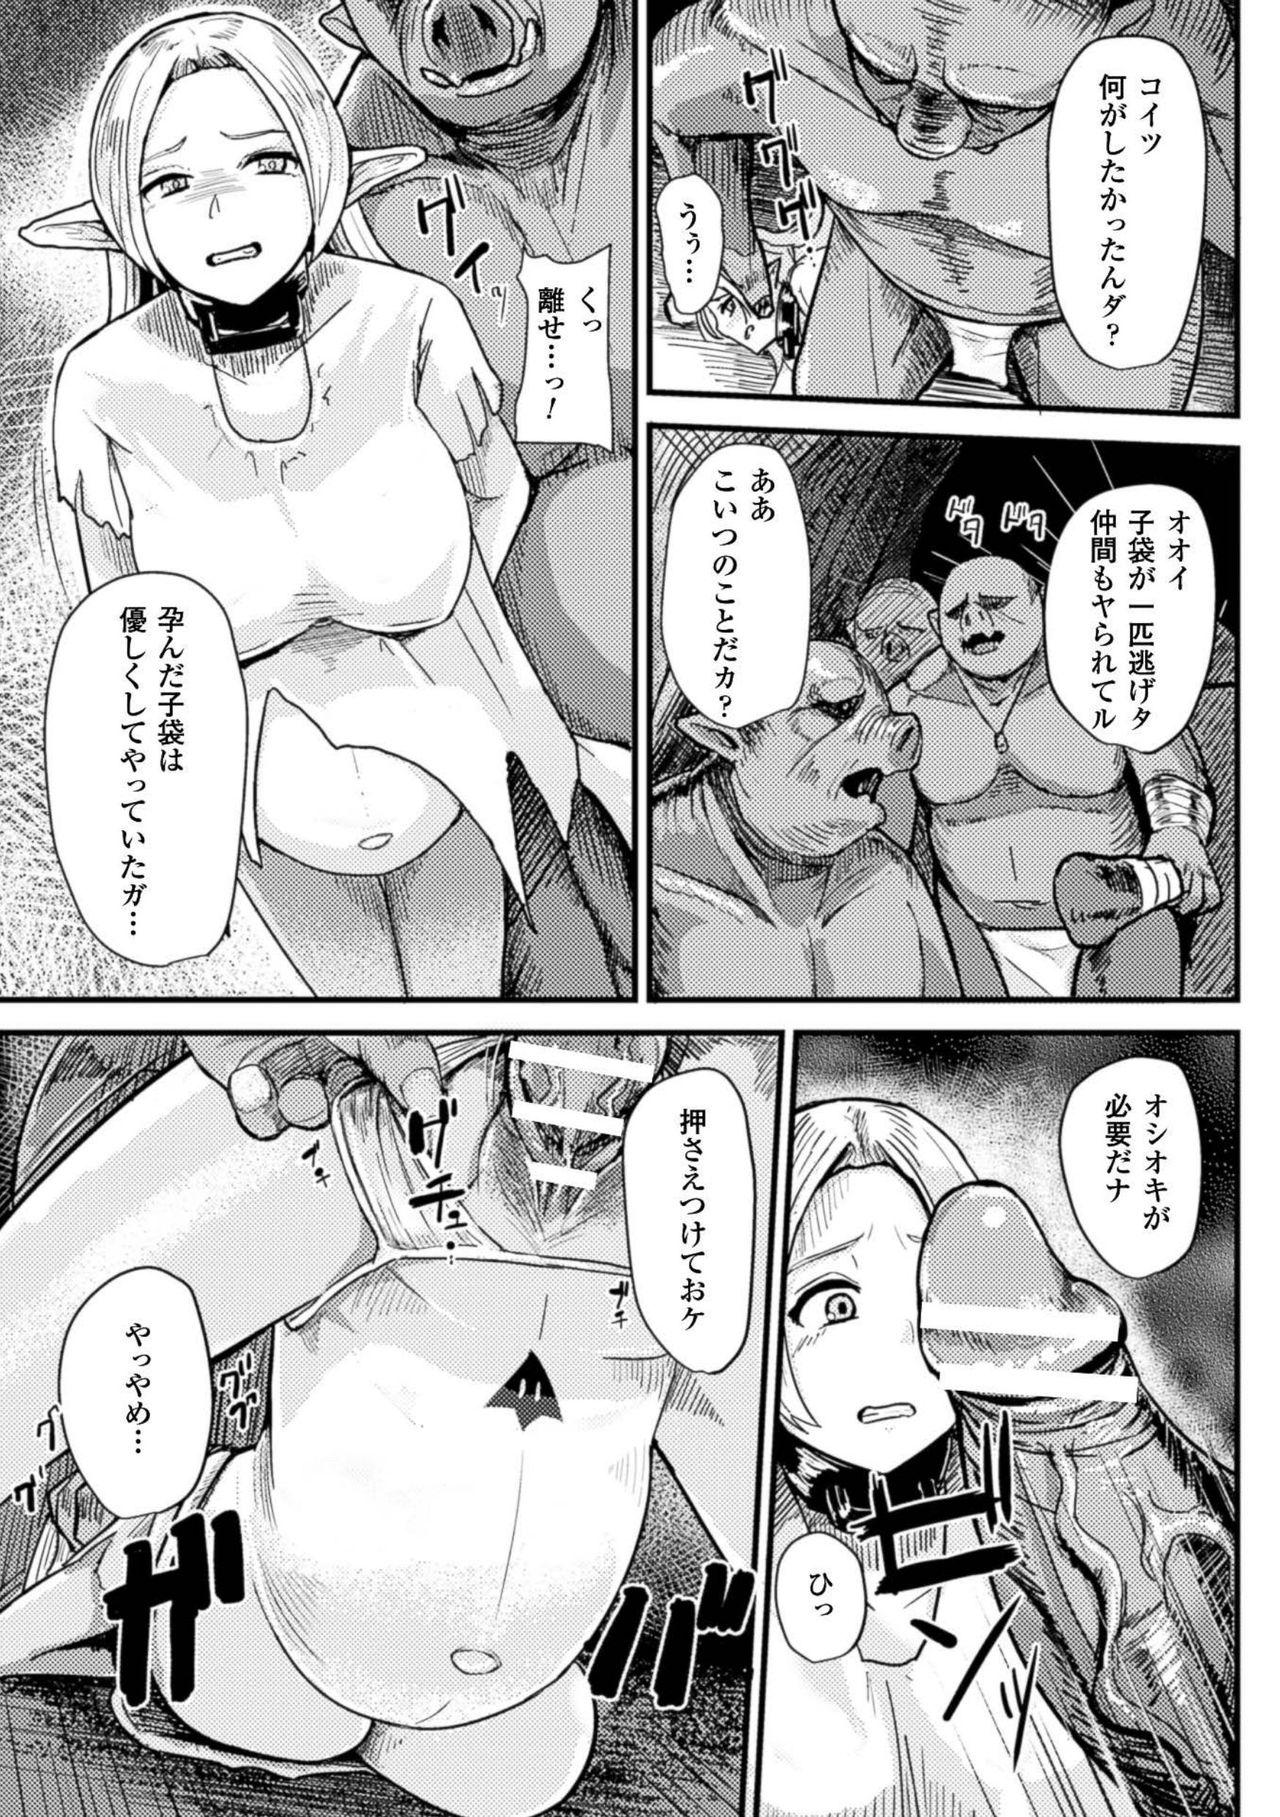 2D Comic Magazine Botebara Sex de Nikubenki Ochi! Vol. 1 50